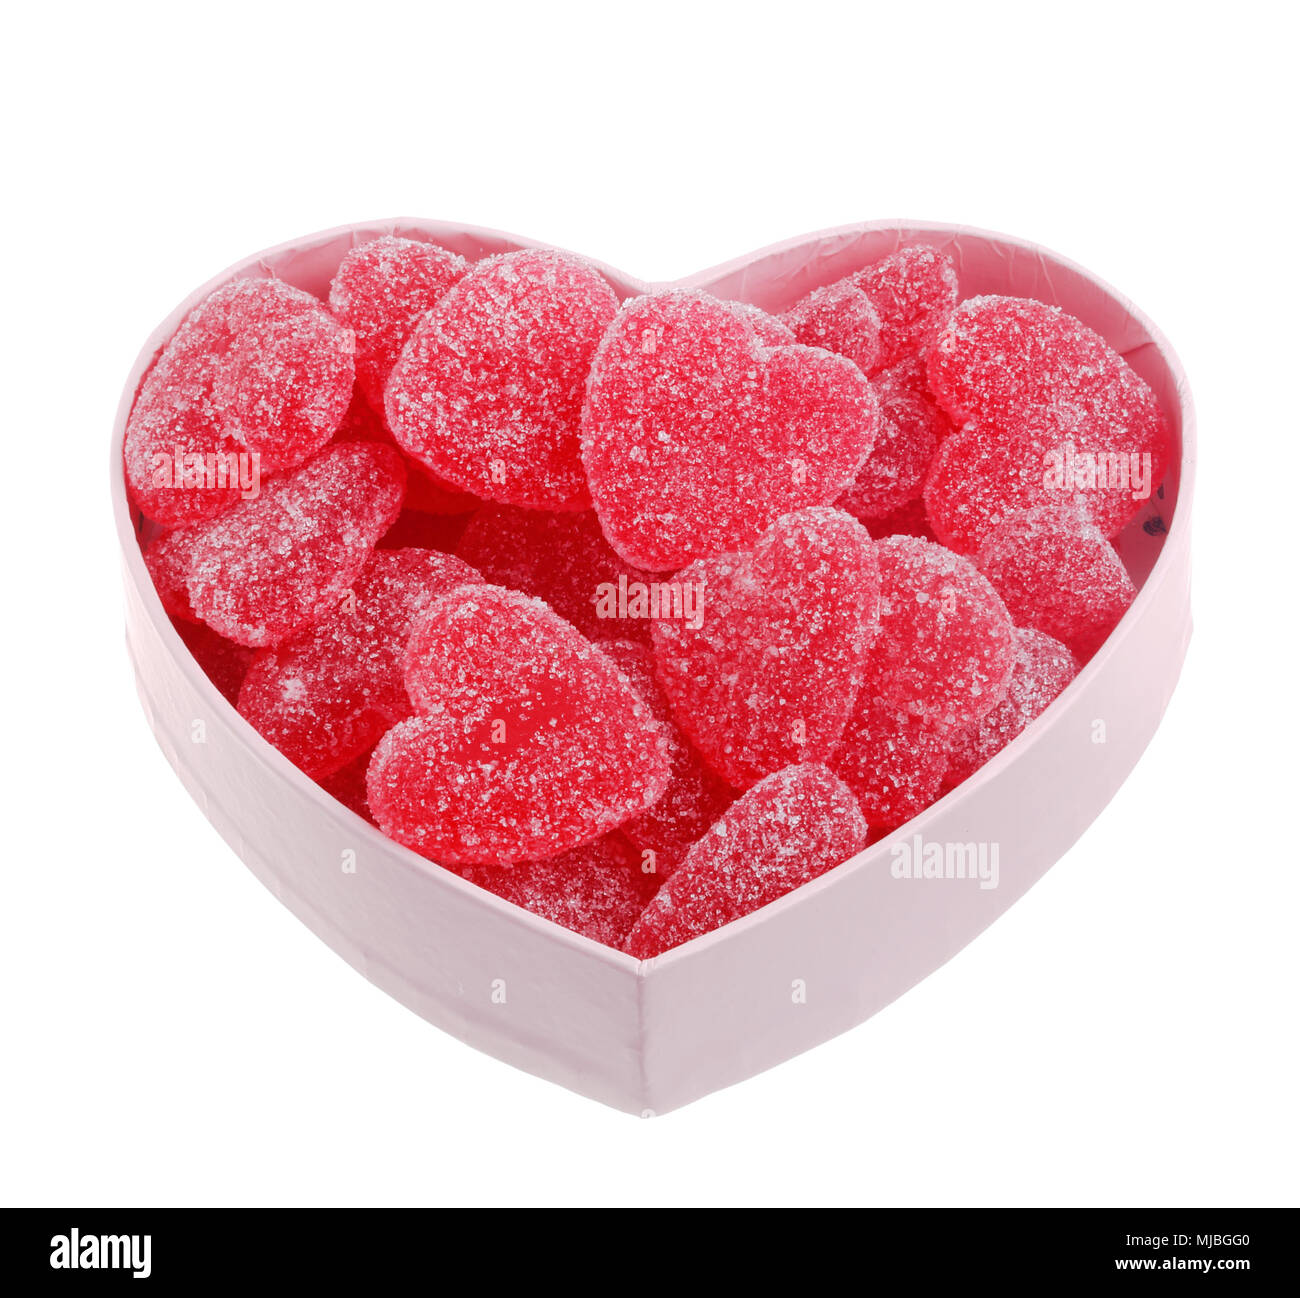 Rosa a forma di cuore scatola riempita con heartshaped jellly candy con un sapore di fragola, isolato su bianco. Foto Stock